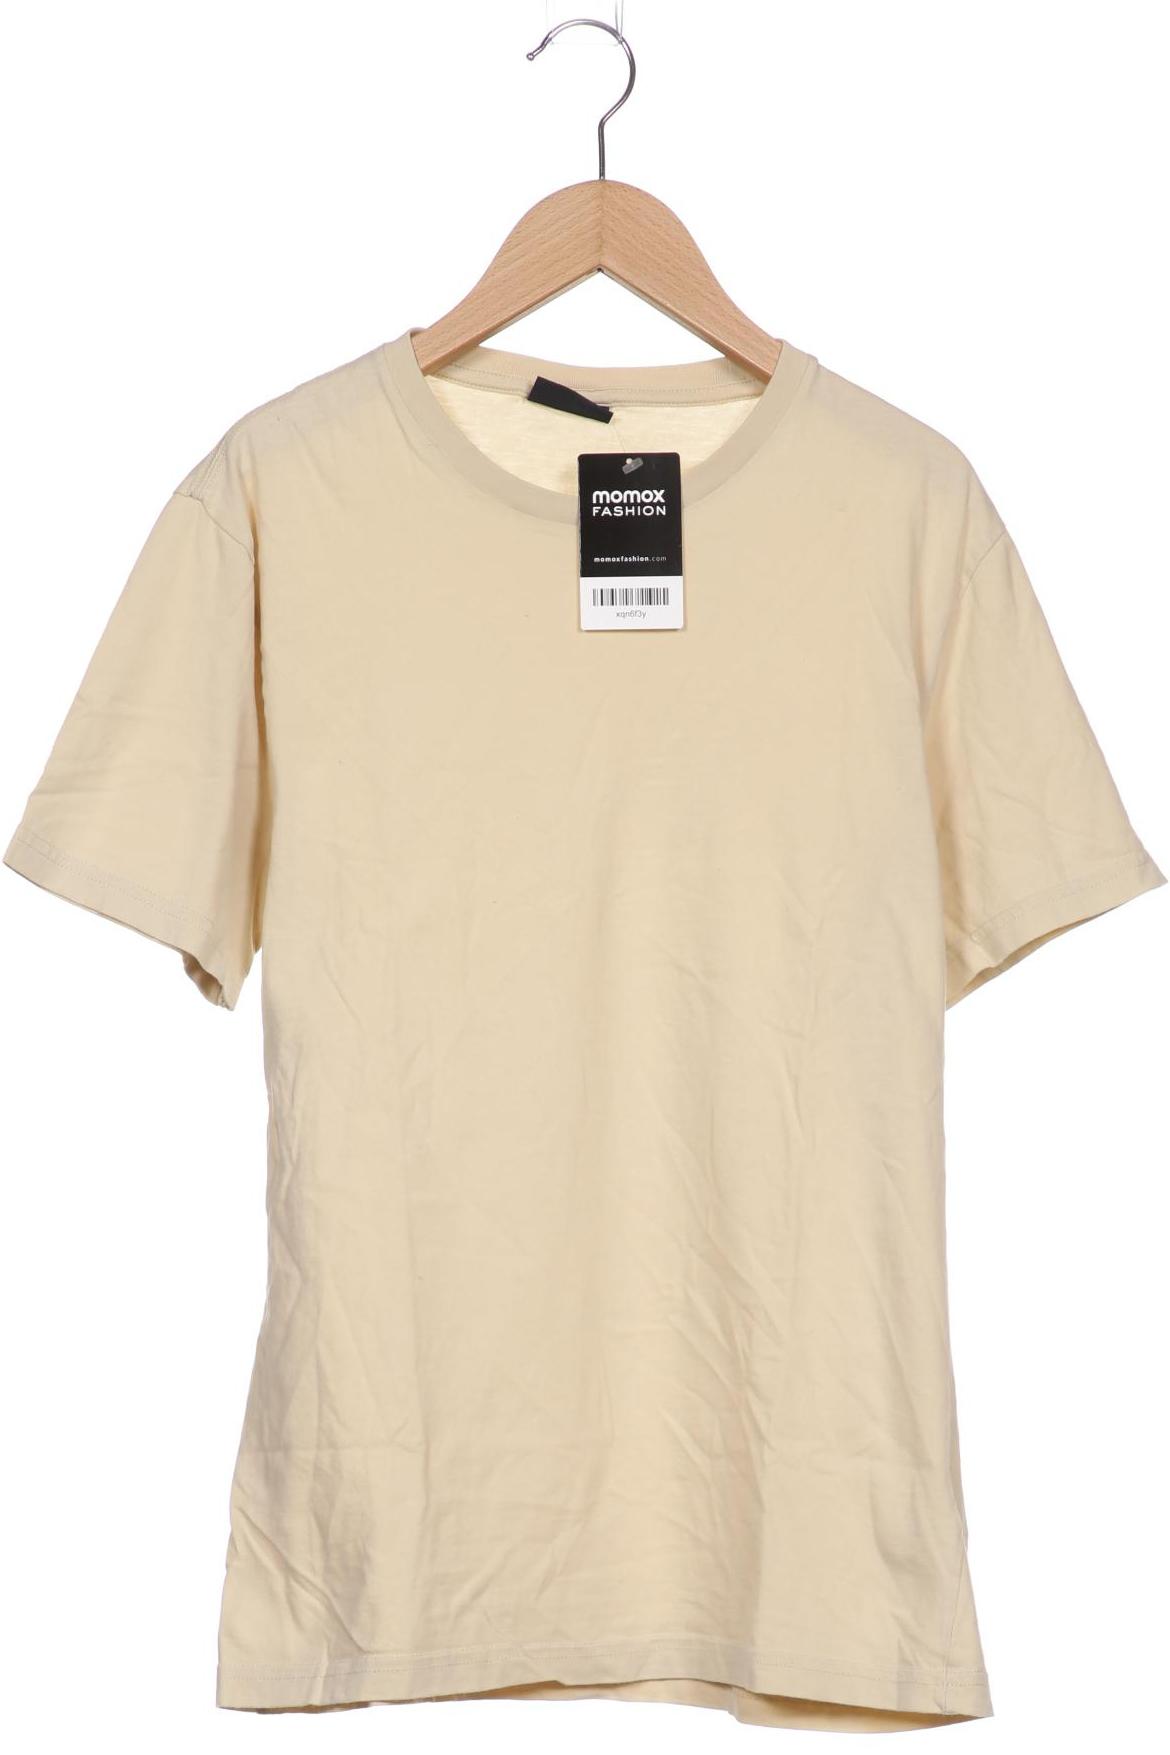 ragman Herren T-Shirt, beige, Gr. 46 von ragman